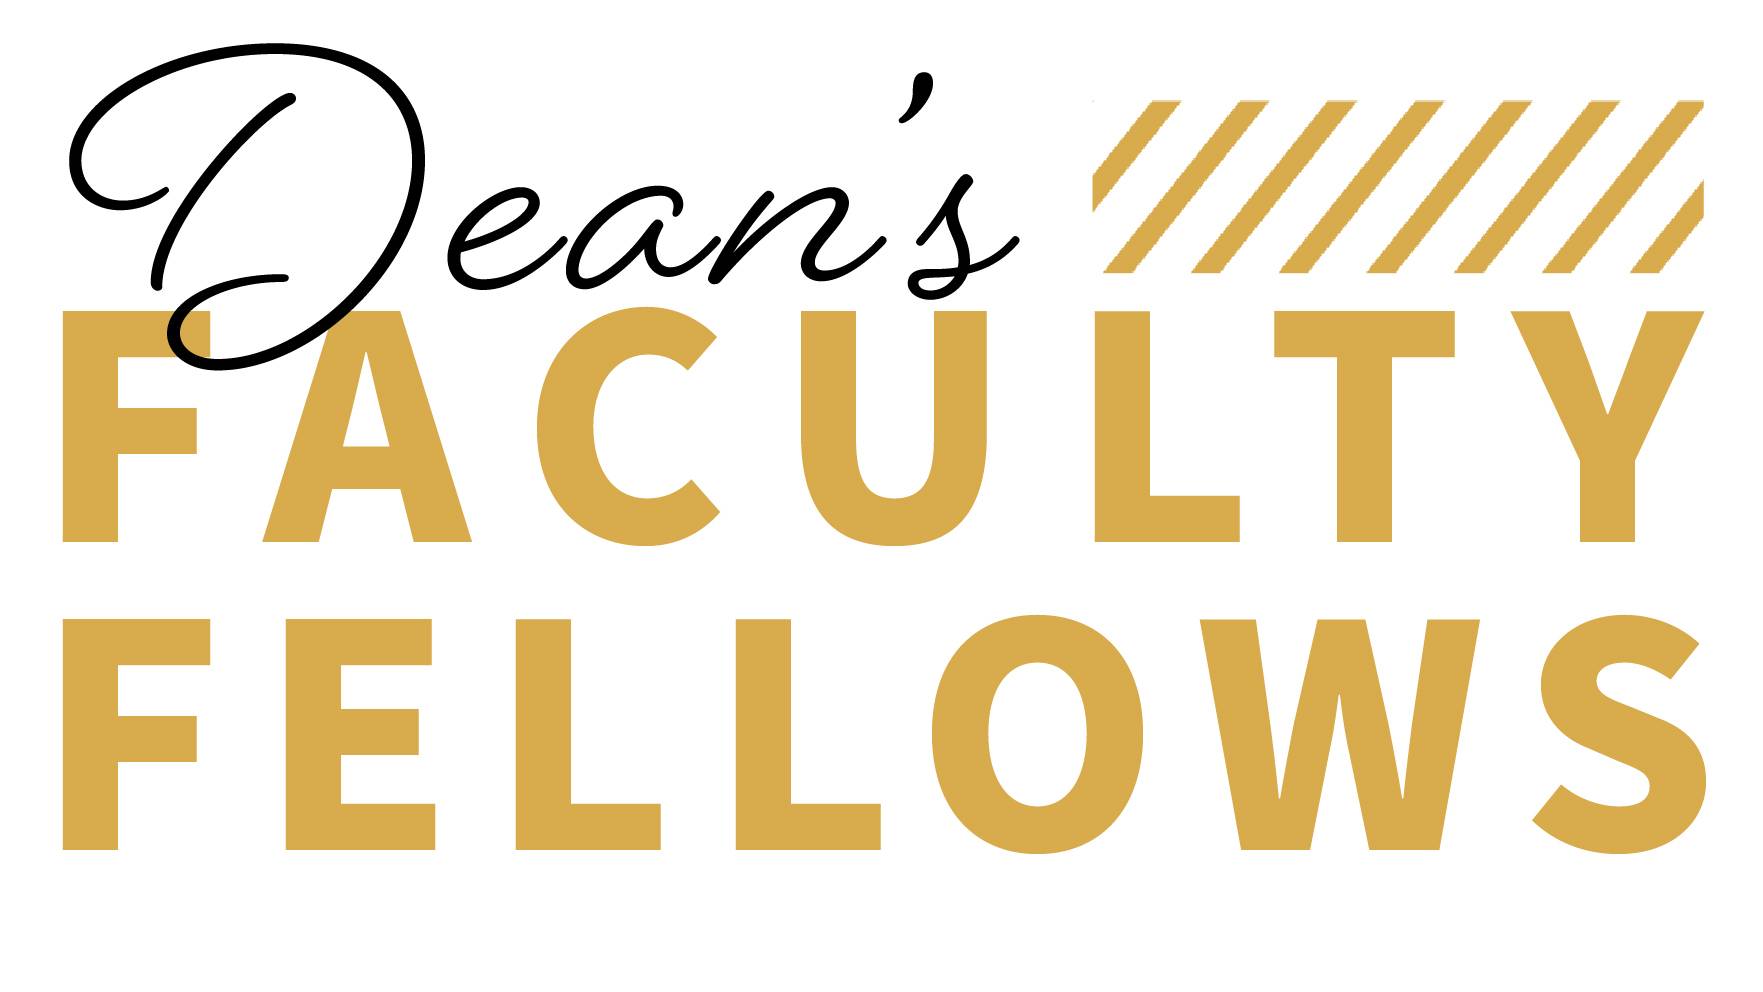 Deans faculty fellows logo